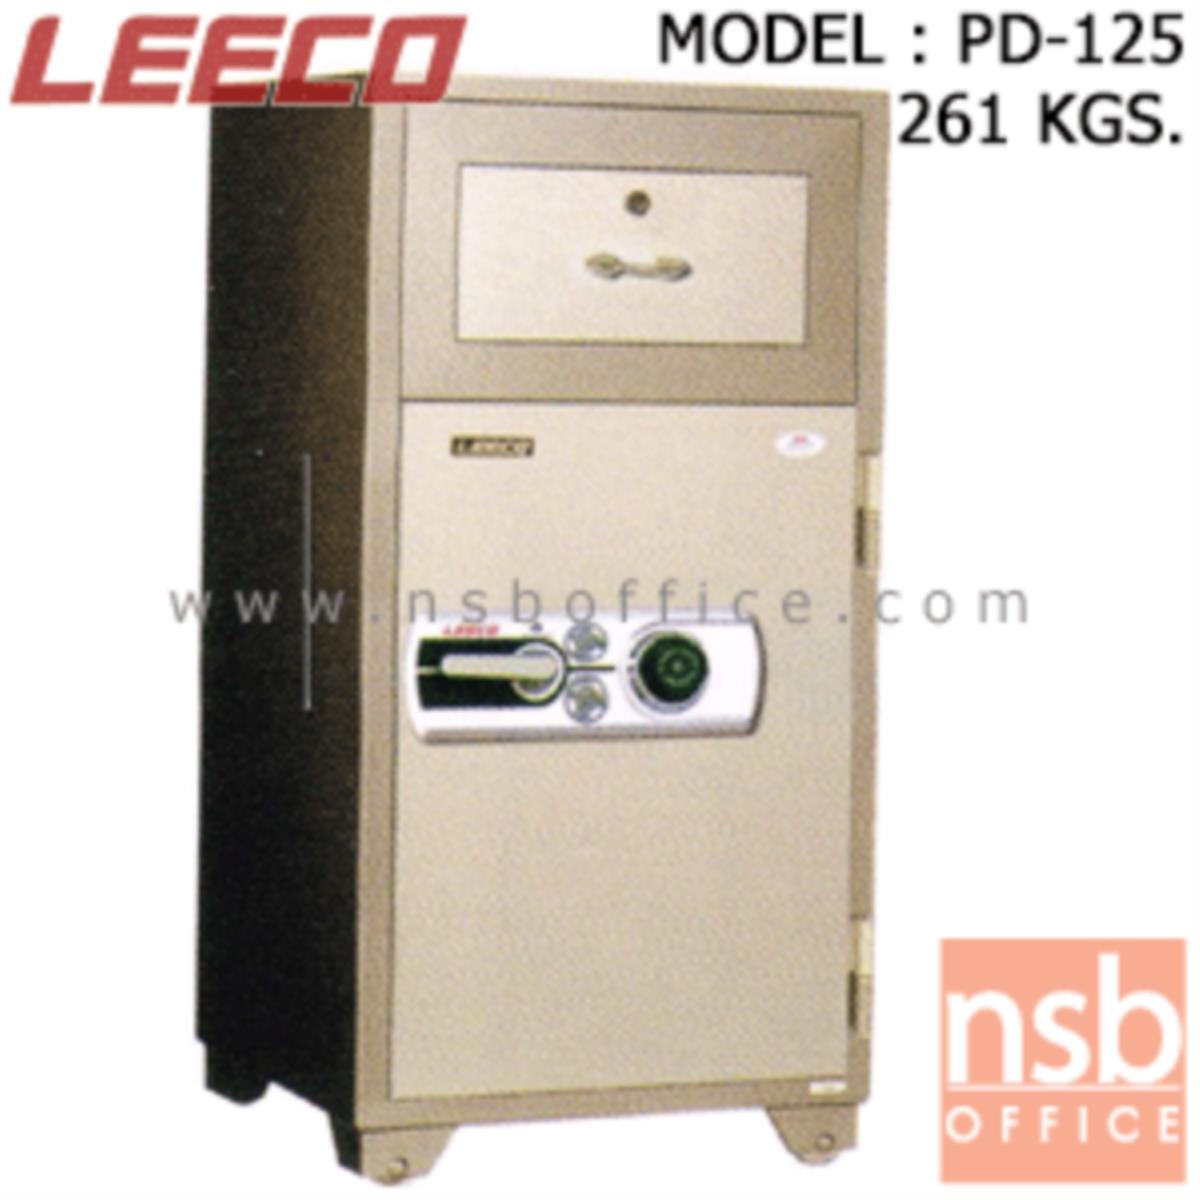 ตู้เซฟแคชเชียร์ 261 กก. ลีโก้ รุ่น LEECO-PD-125 มี 2 กุญแจ 1 รหัส (เปลี่ยนรหัสได้)   